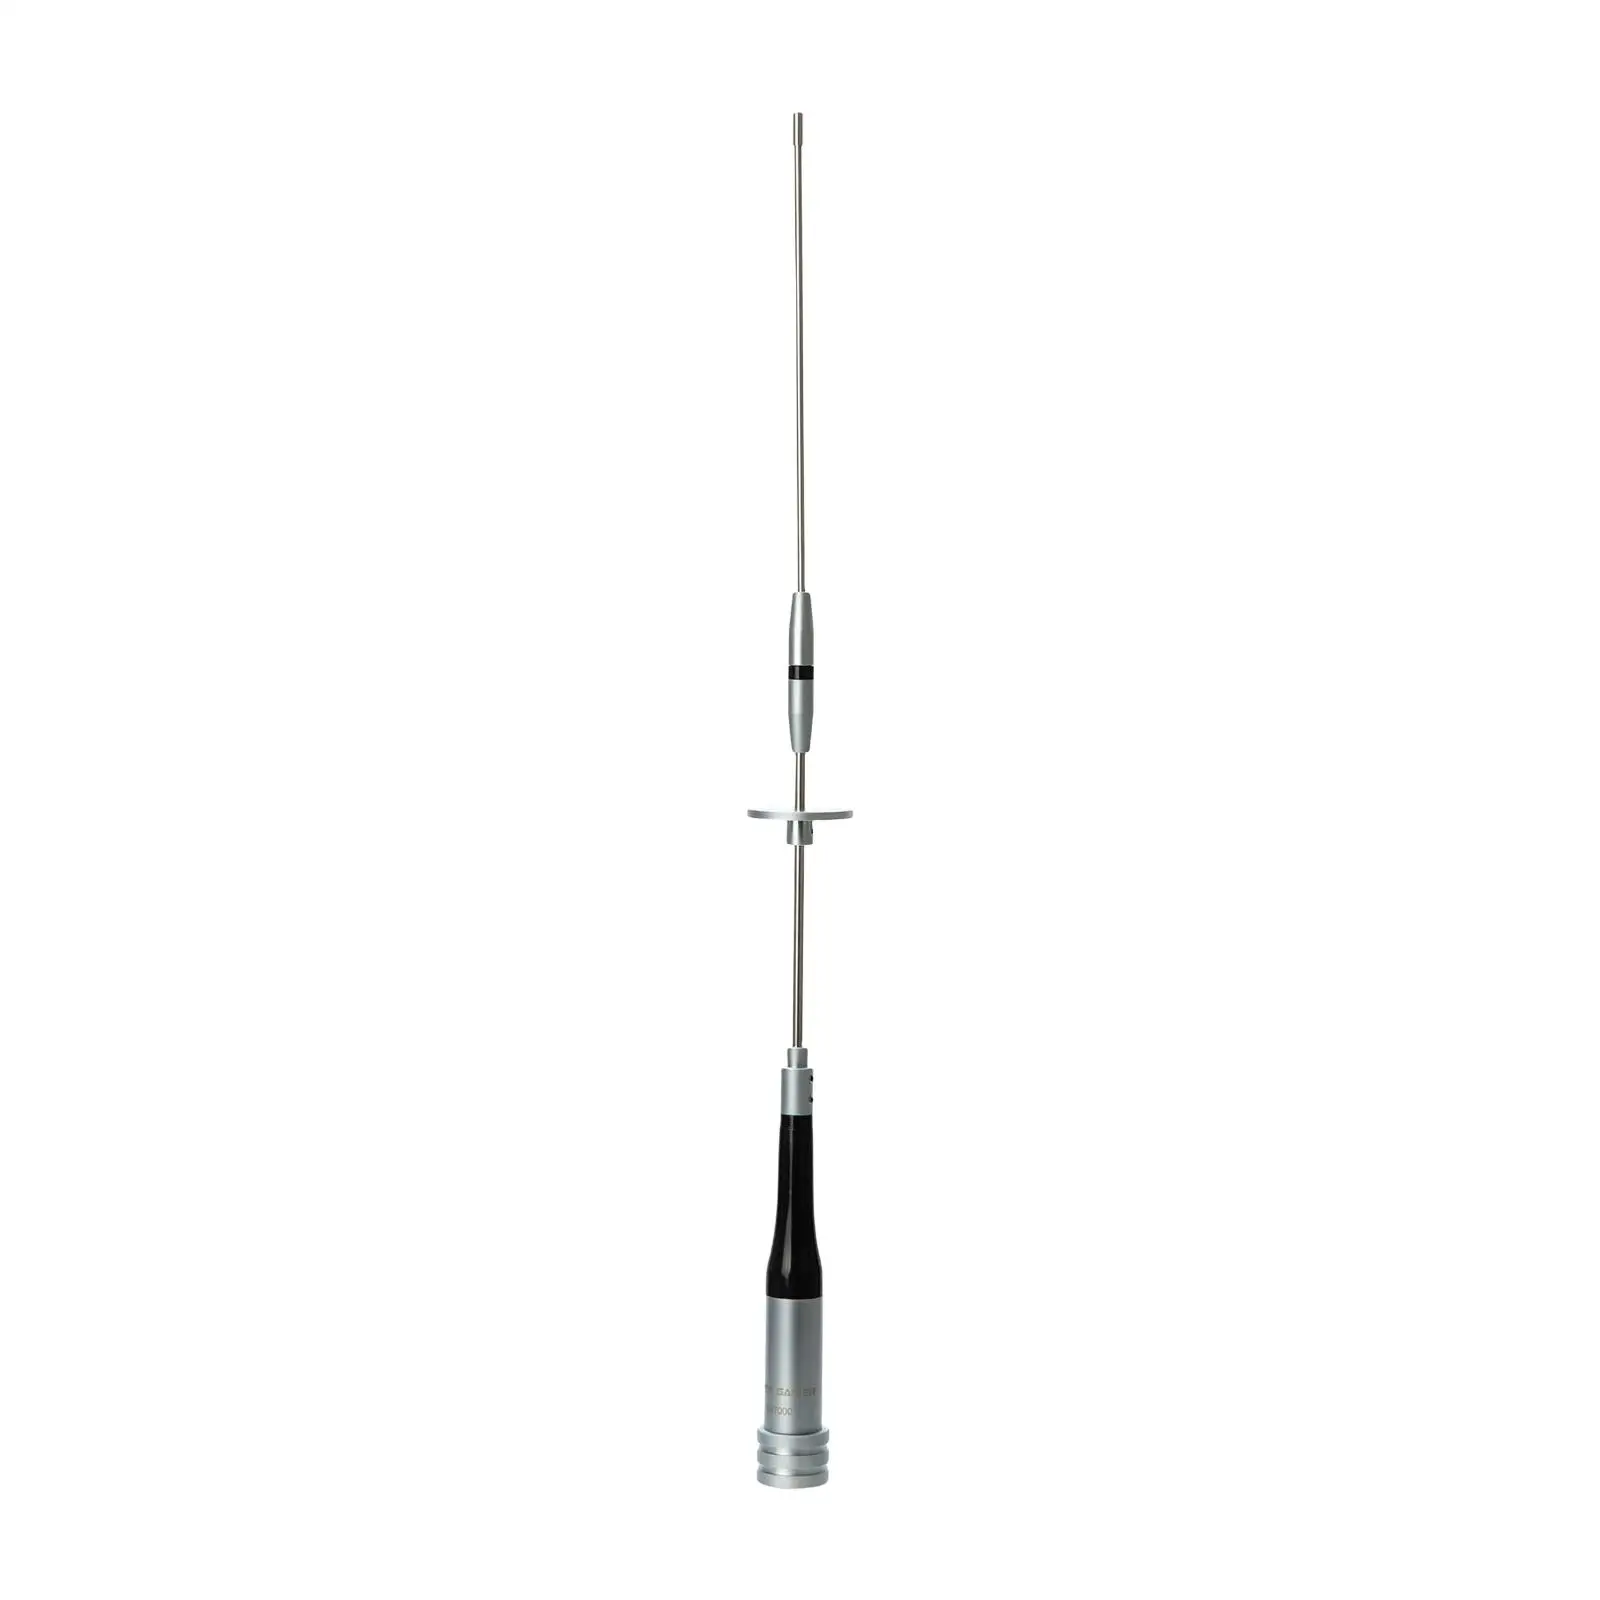 Mobile Radio Antenna Portable UHF400-470MHz 144/430MHz SG7000 Mobile Antenna